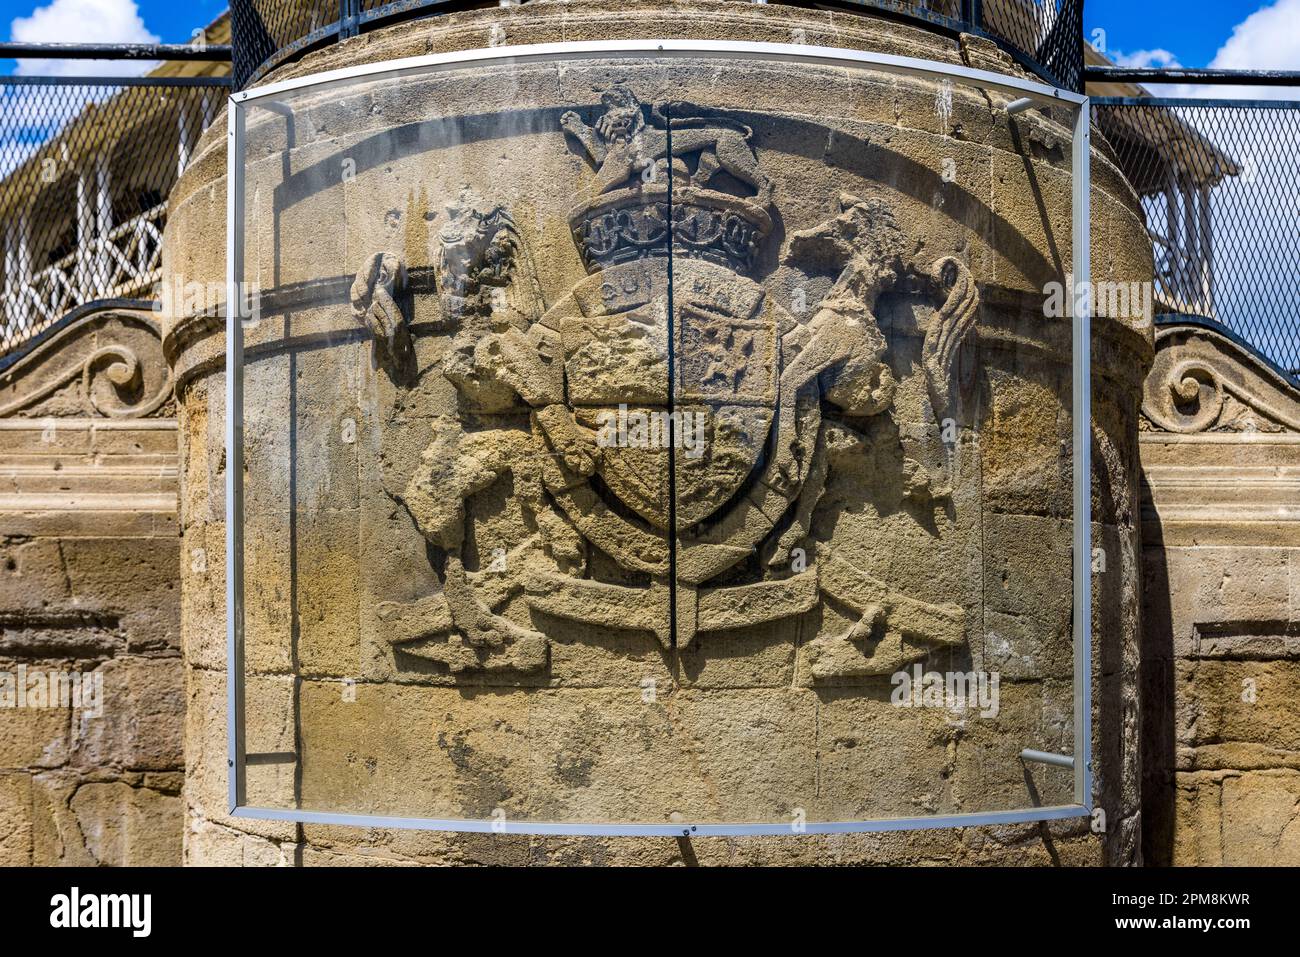 Gedenktafel mit dem britischen Königlichen Wappen zur Erinnerung an die Krönung von Elizabeth II. Im Jahr 1953. Am Brunnen vor dem ehemaligen britischen Gerichtsgebäude. Lefkoşa Türk Belediyesi, Zypern Stockfoto